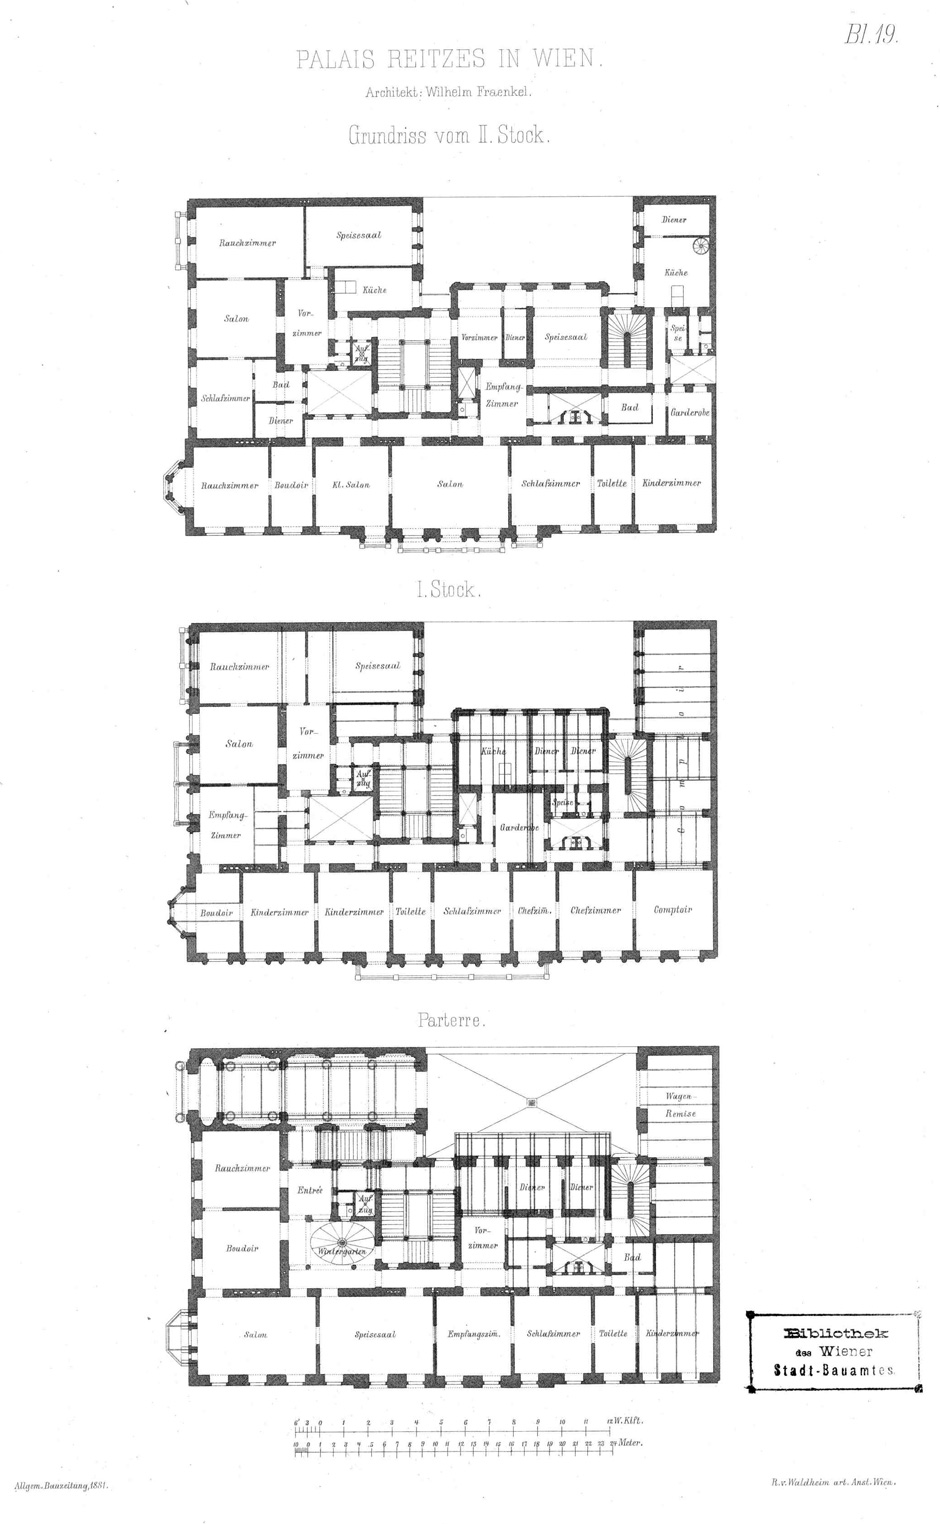 Archivbild: Palais Reitzes, Architekt Wilhelm Fraenkl; Grundrisse Parterre, 1. und 2. Stock